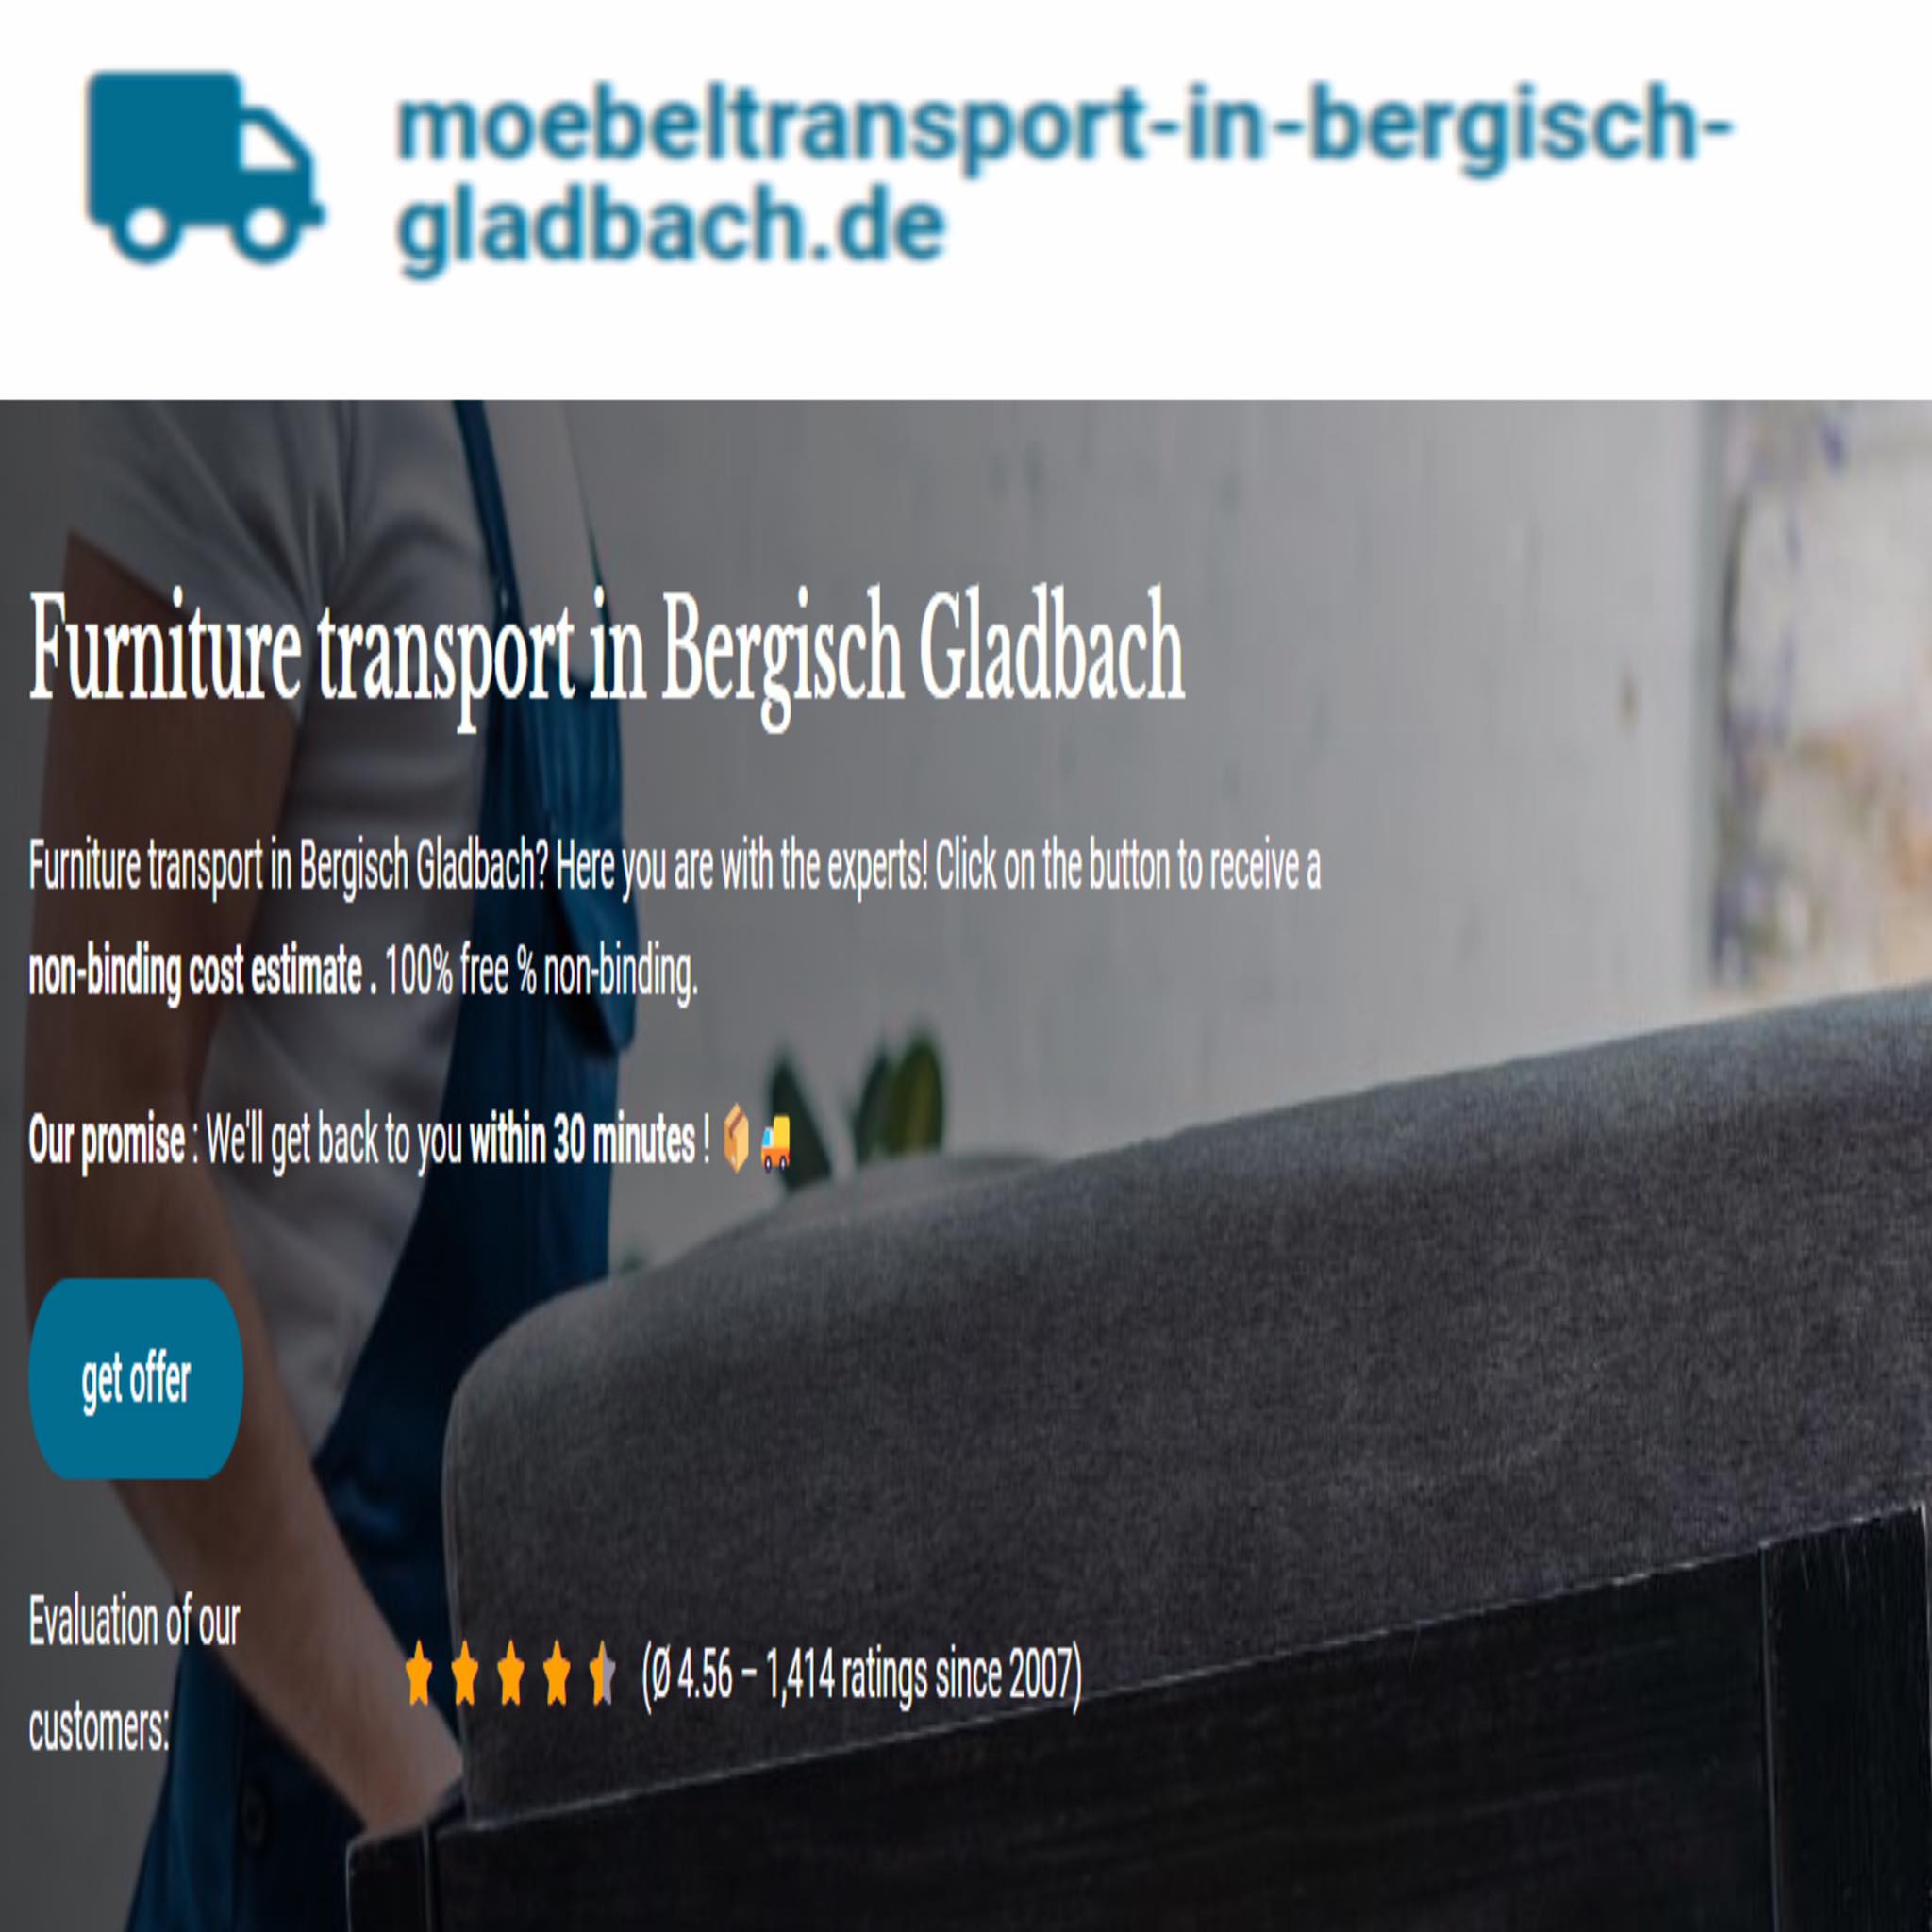 moebeltransport-in-bergisch-gladbach.de in Bergisch Gladbach